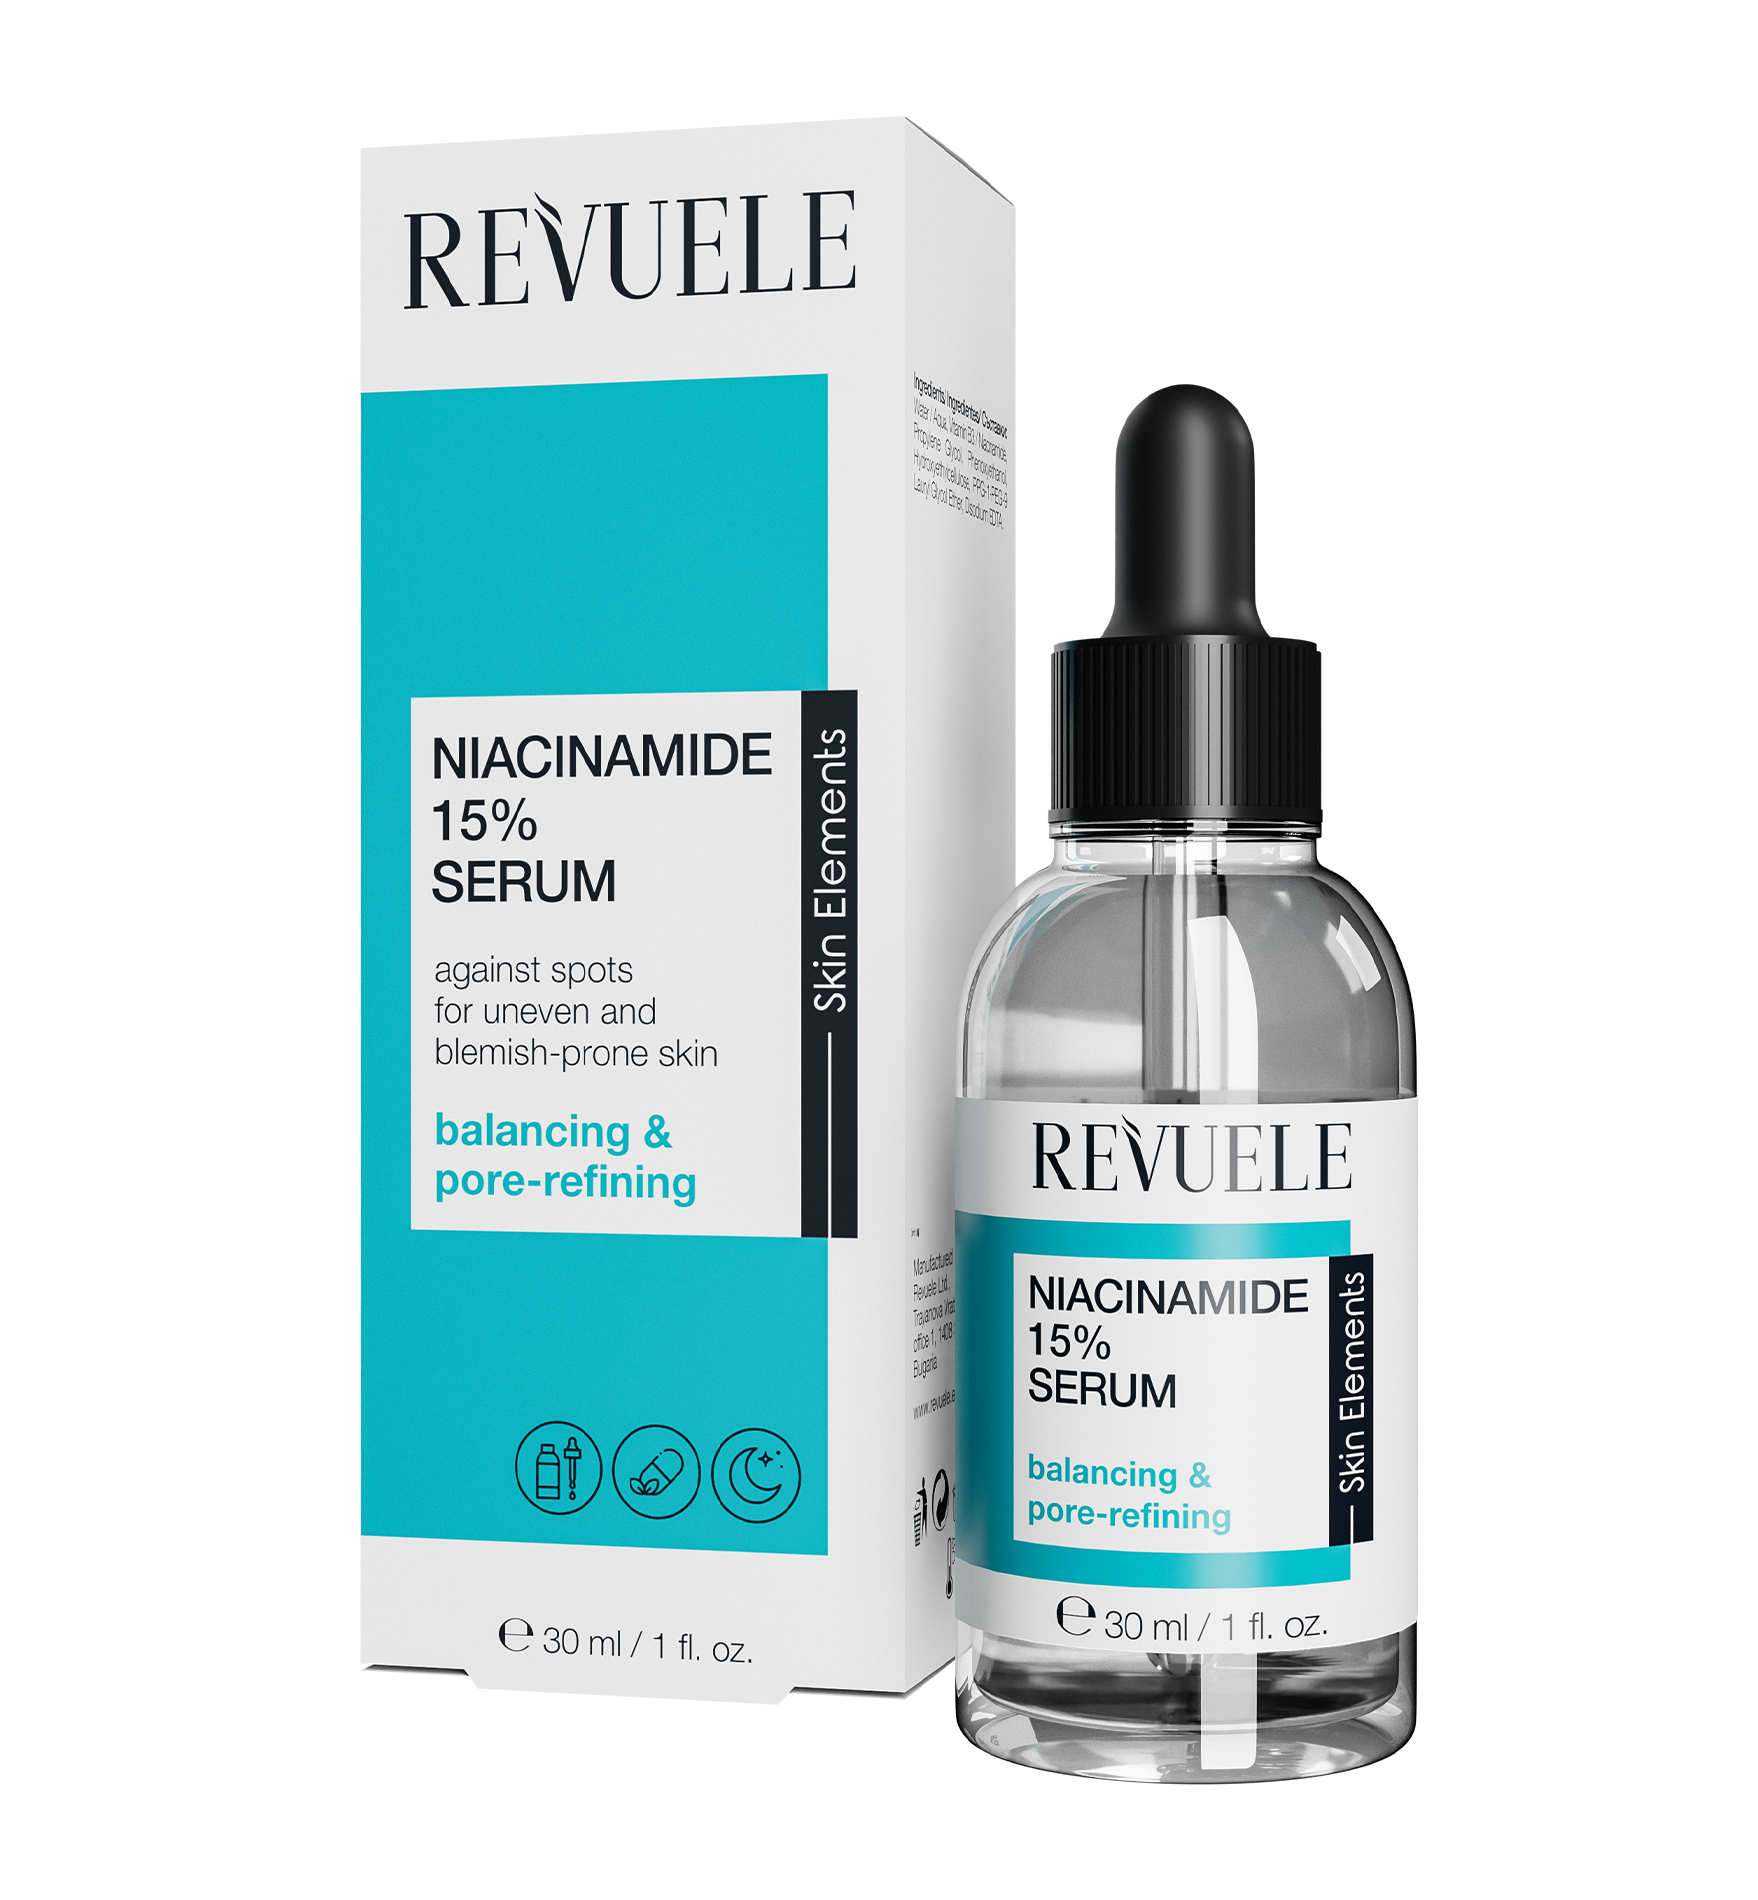 Revuele Niacinamide 15% serum - 30ml